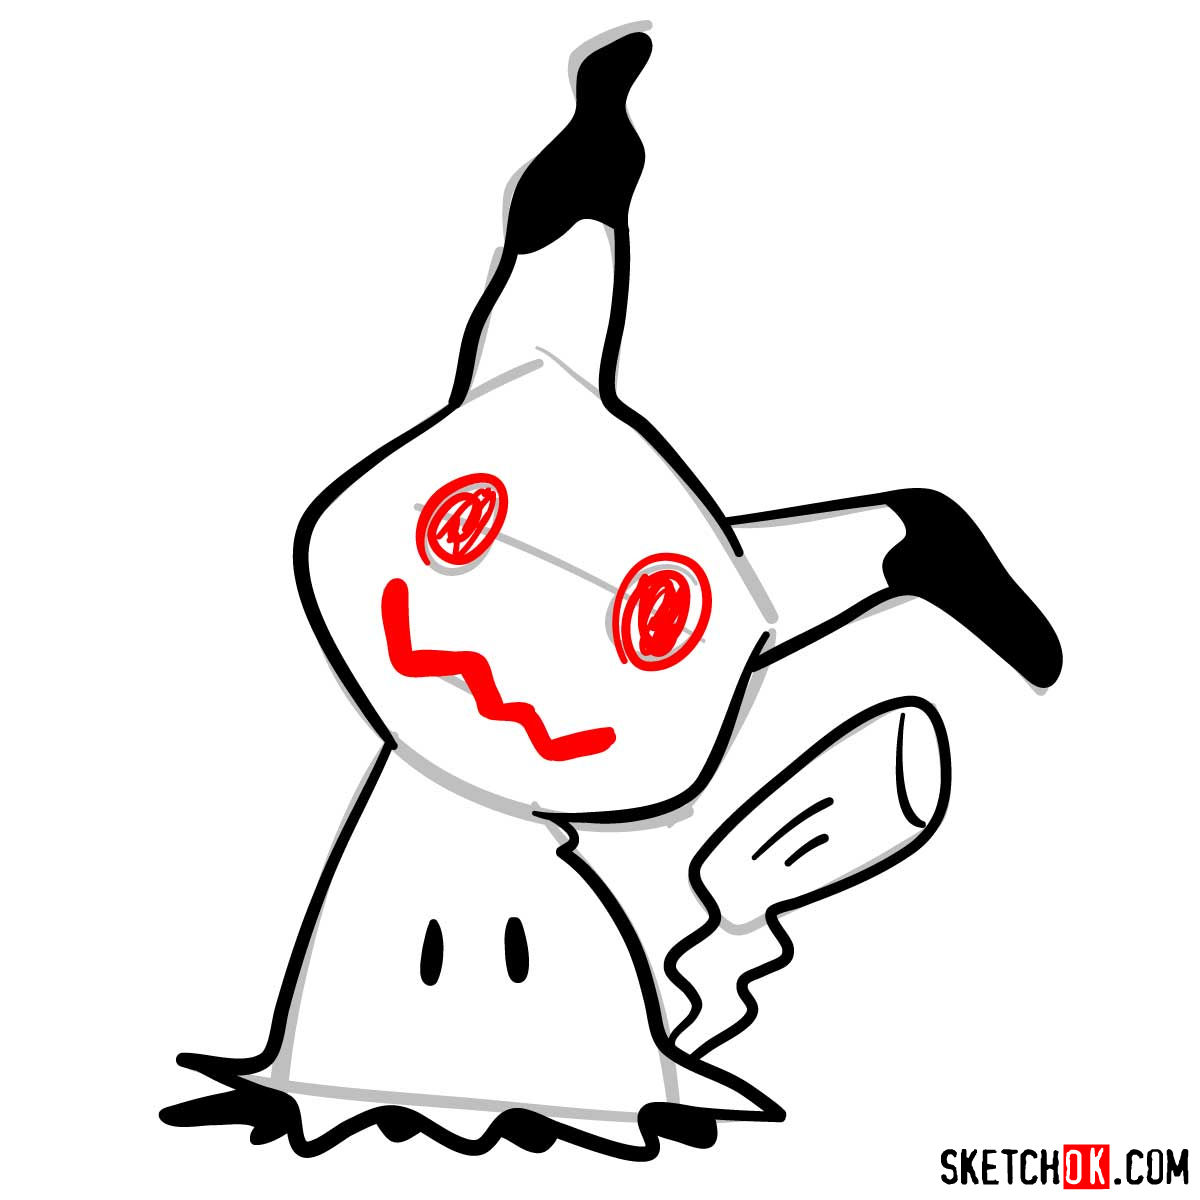 How to draw Mimikyu ghost pokemon (looks like Pikachu) - step 07